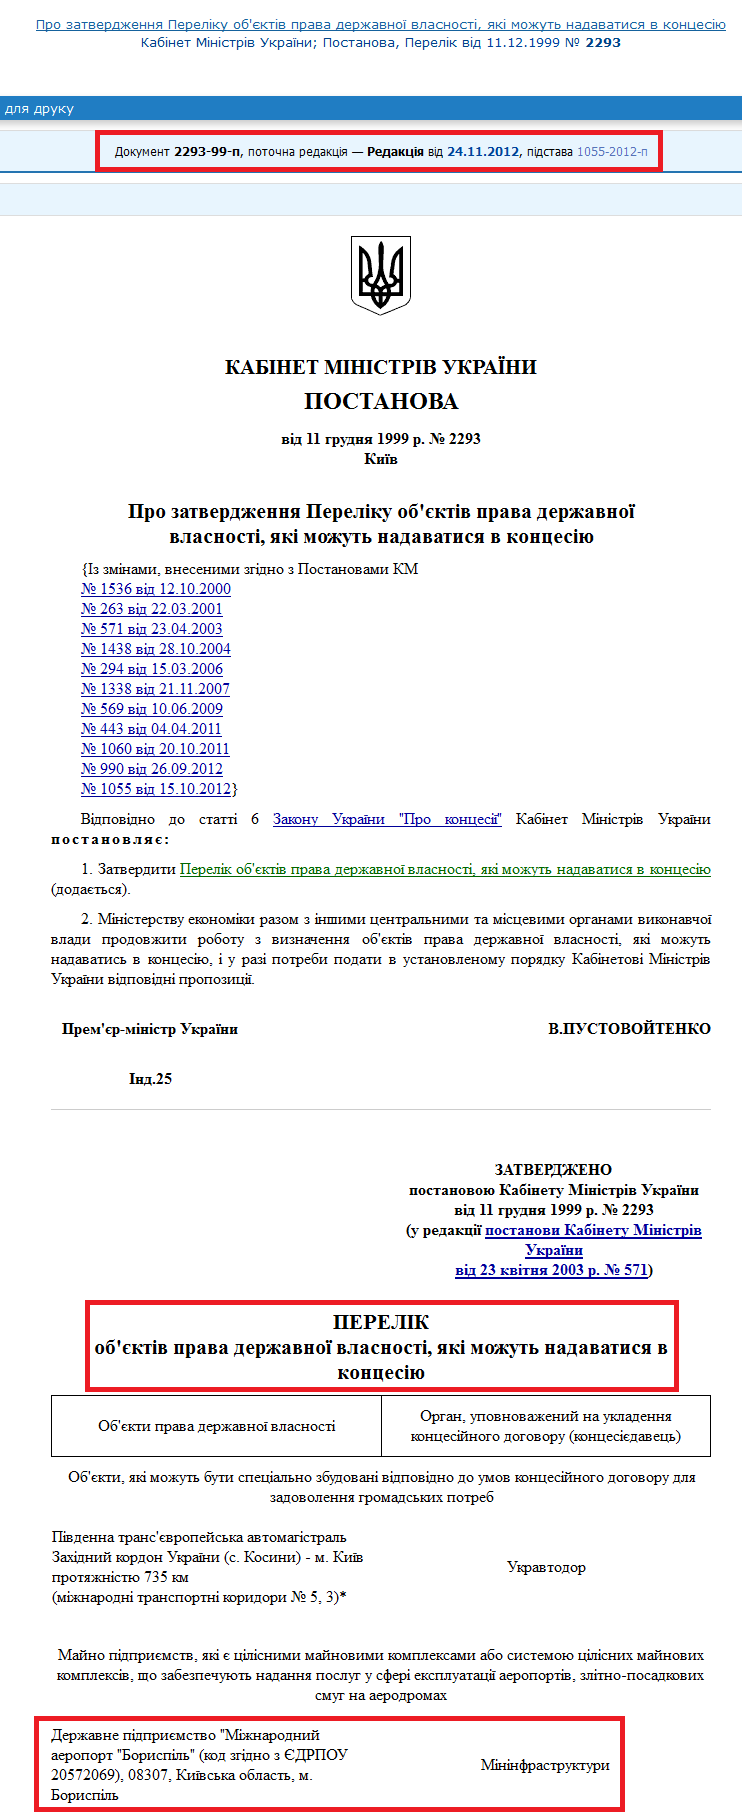 http://zakon4.rada.gov.ua/laws/show/2293-99-%D0%BF